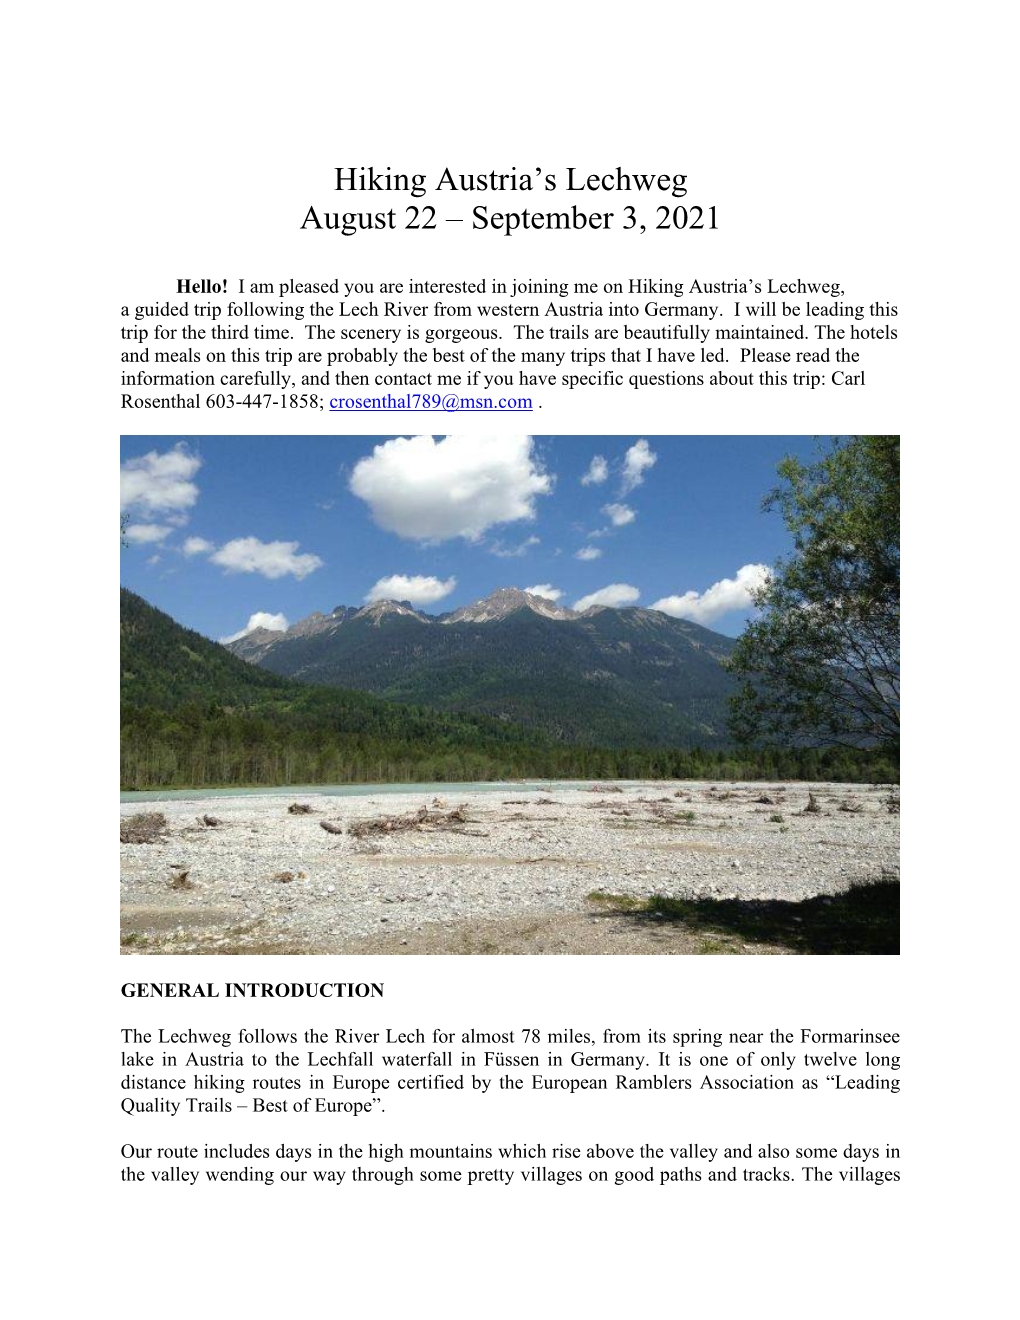 Hiking Austria's Lechweg August 22 – September 3, 2021